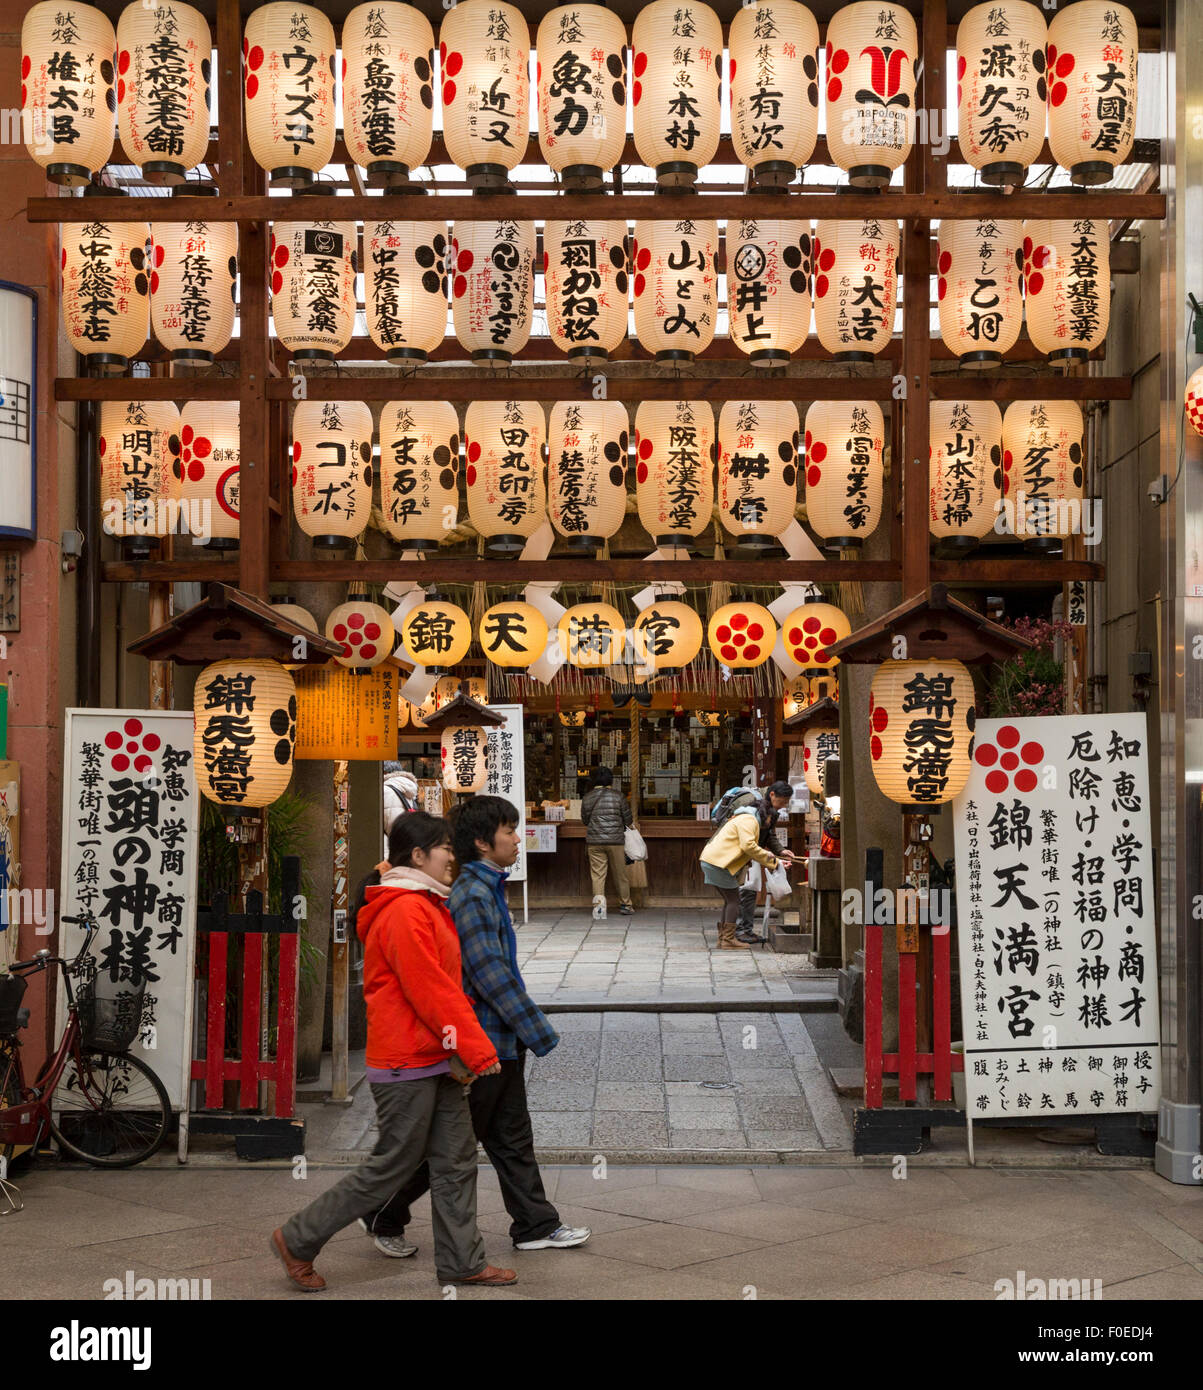 Los peatones en la entrada y dentro del templo en el mercado de Nishiki en Kyoto, Japón. Linternas japonesas colgando en la parte delantera. Foto de stock